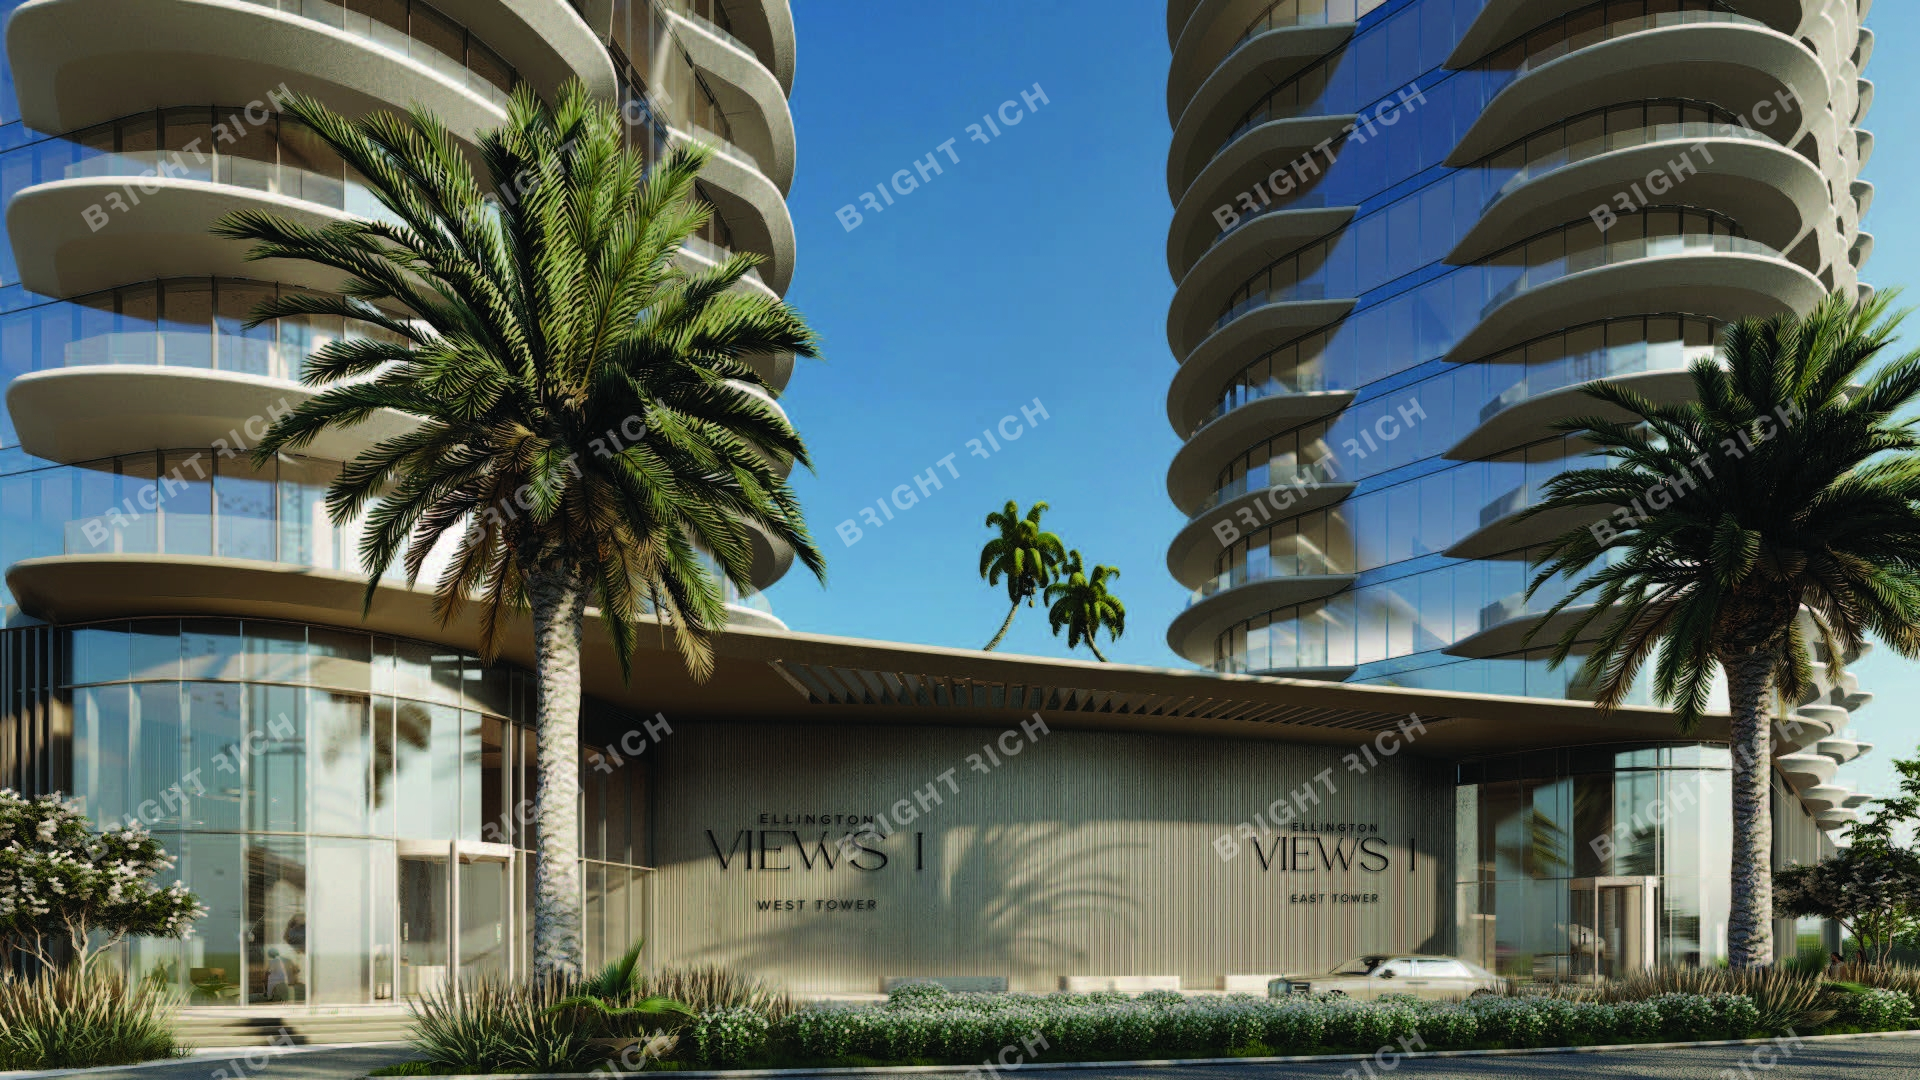 Ellington Views I West Tower, apart complex in Ras Al Khaimah